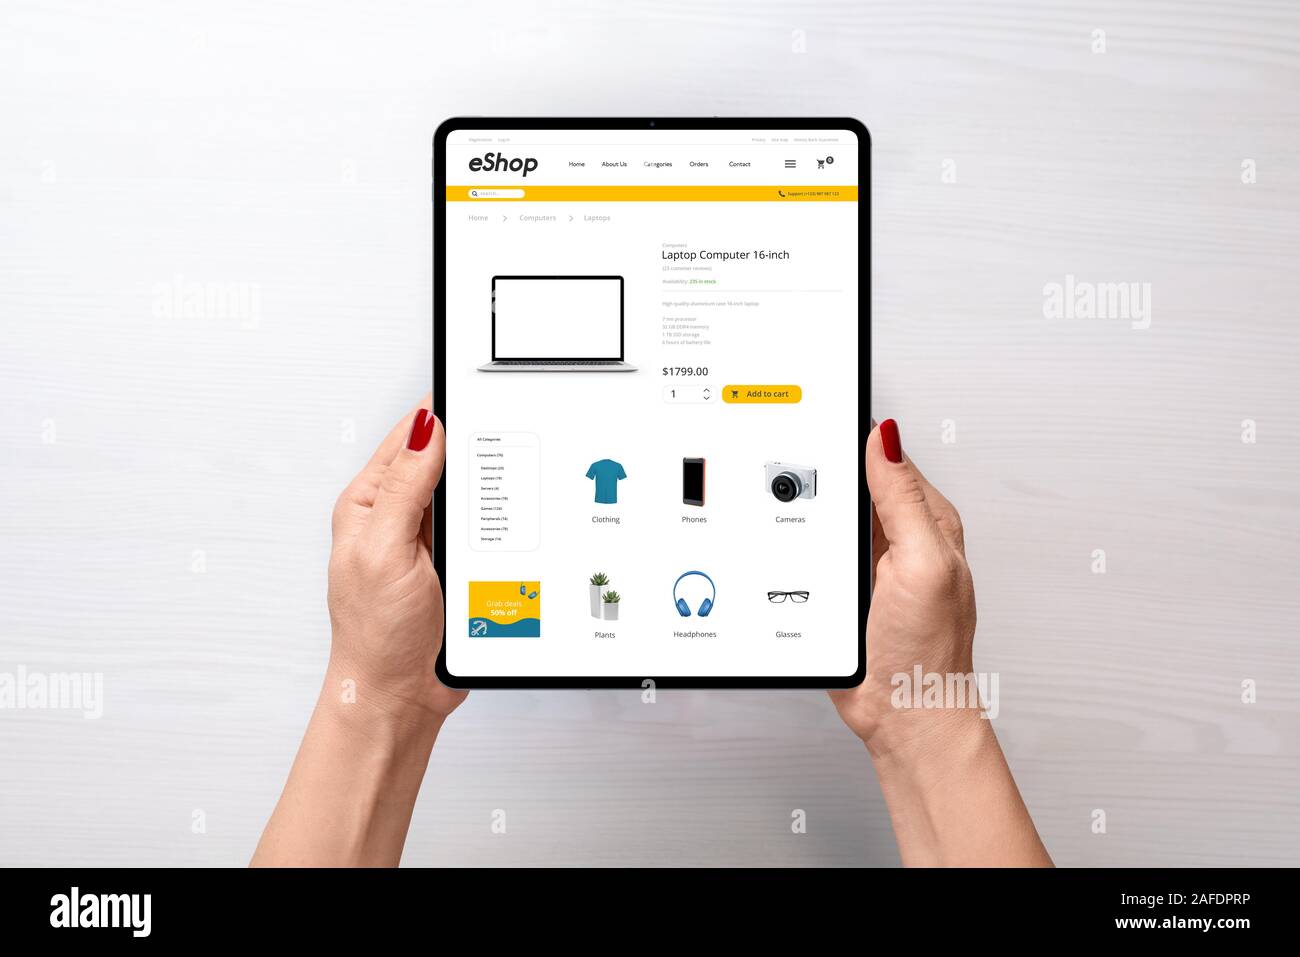 Sitio web de comercio electrónico moderno en tablet en manos de la mujer. Vista superior, plana sentar la escena. Concepto de compras en línea Foto de stock